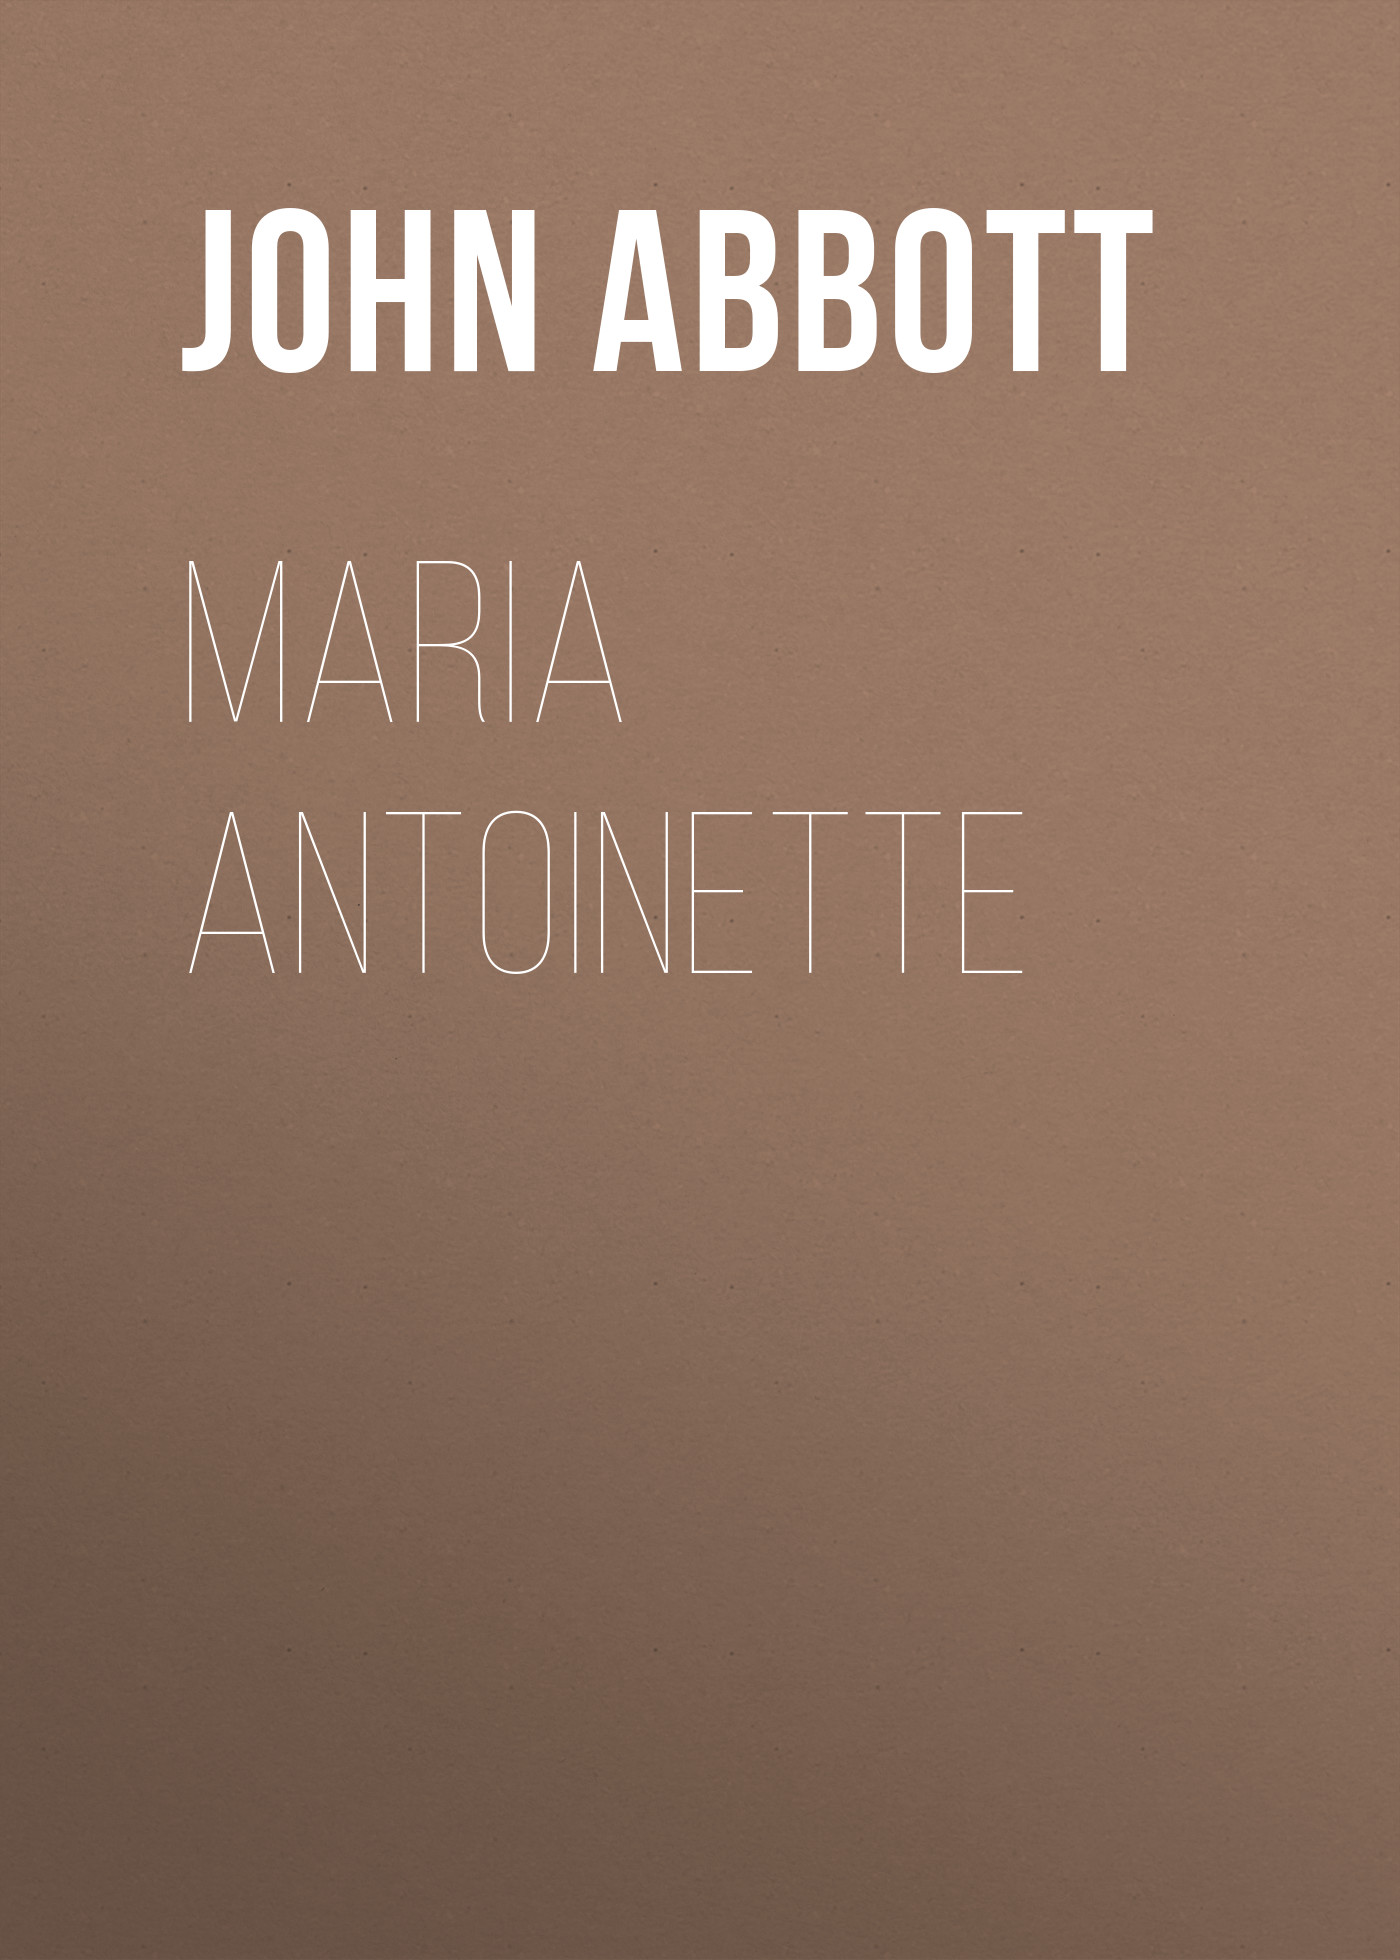 Книга Maria Antoinette из серии , созданная John Abbott, может относится к жанру Зарубежная старинная литература, Зарубежная классика, Историческая литература. Стоимость электронной книги Maria Antoinette с идентификатором 24173244 составляет 5.99 руб.